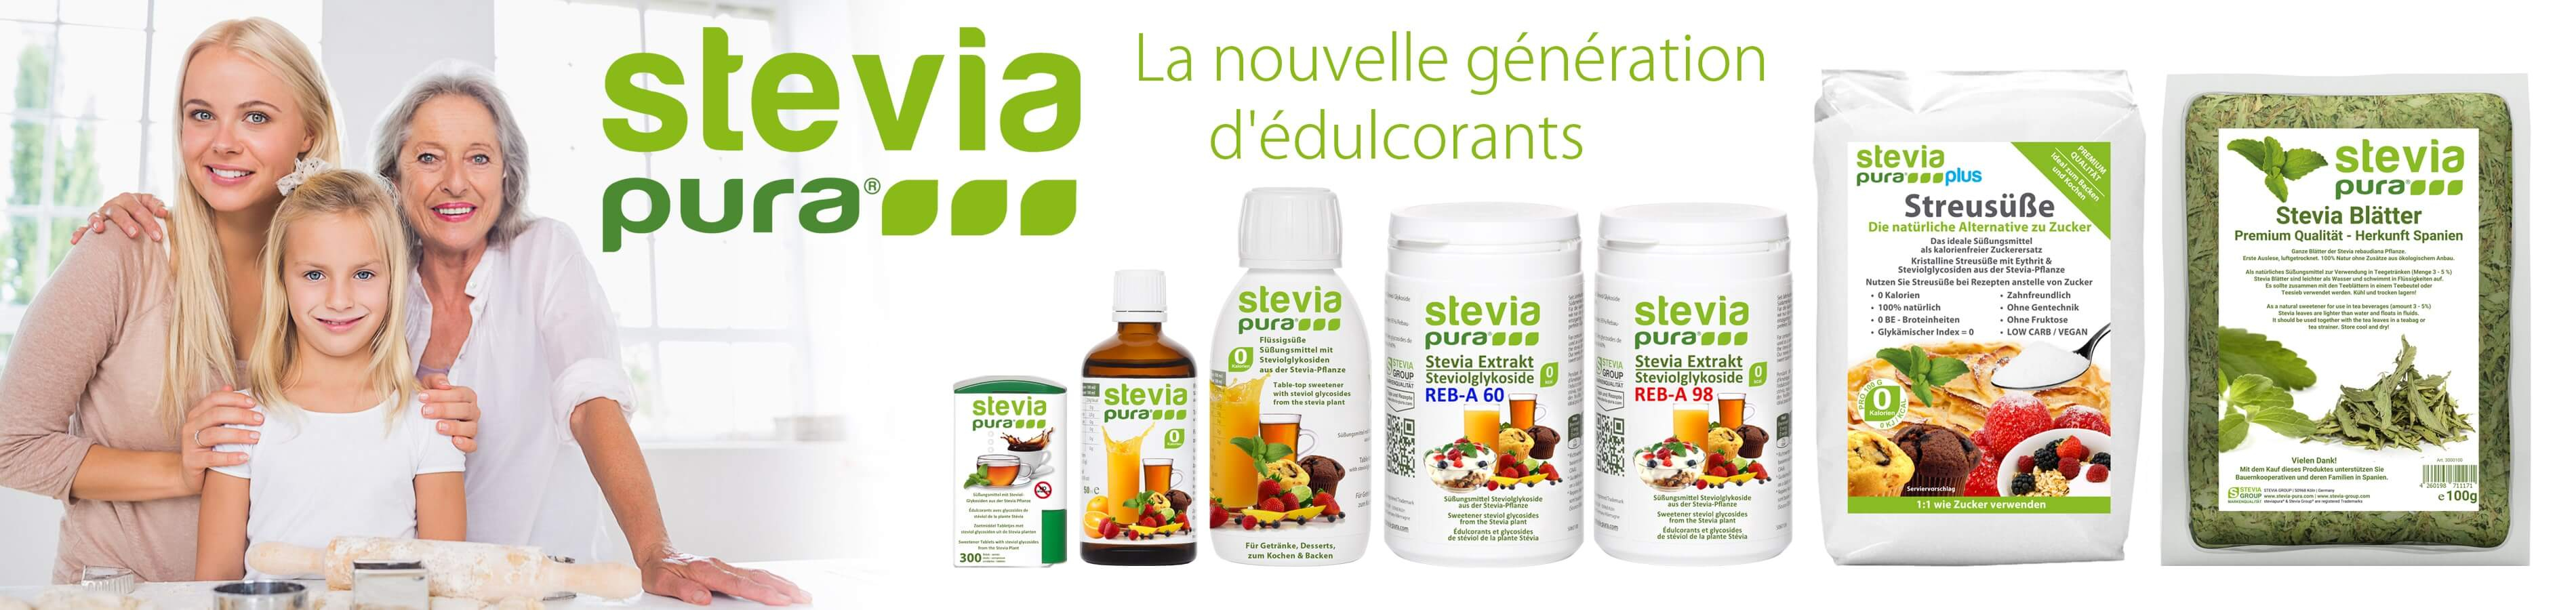 Acheter de la Stévia | Produits de haute qualité à base de Stévia et d'érythritol | steviapura